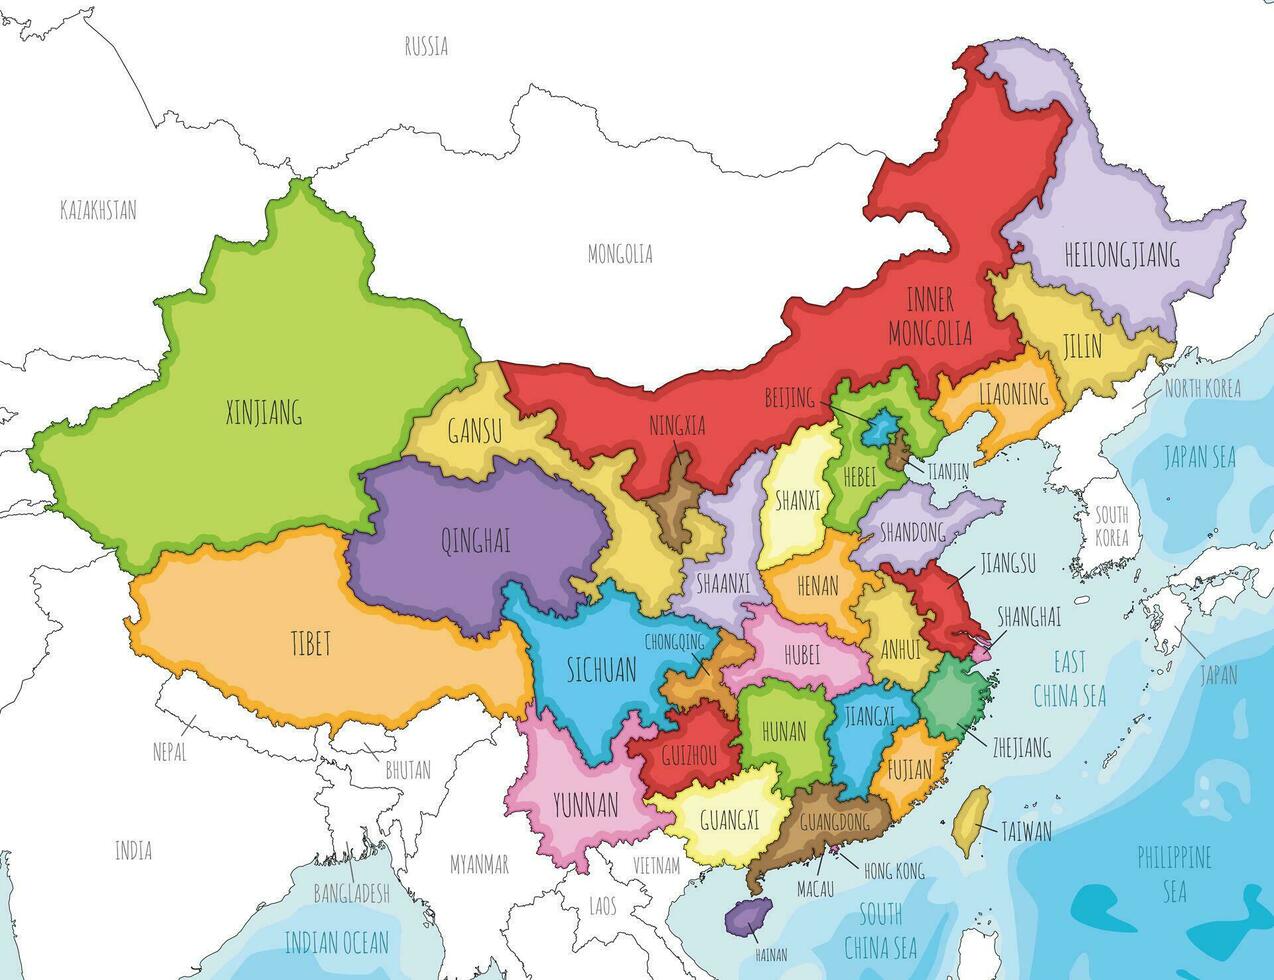 vektor illustrerade Karta av Kina med provinser, regioner och administrativ divisioner, och angränsande länder. redigerbar och klart märkt skikten.